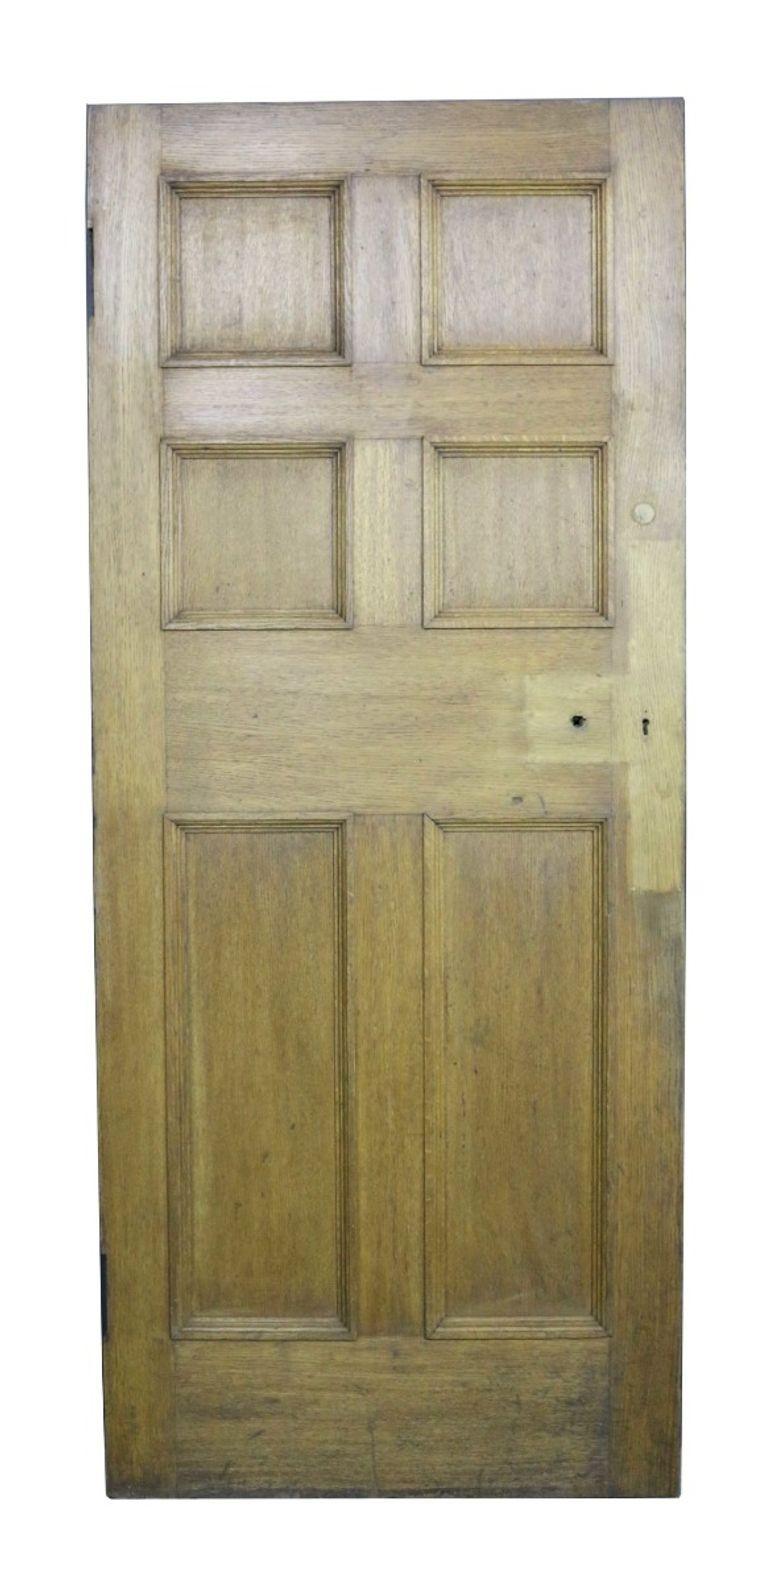 A reclaimed oak interior door of six panel design.